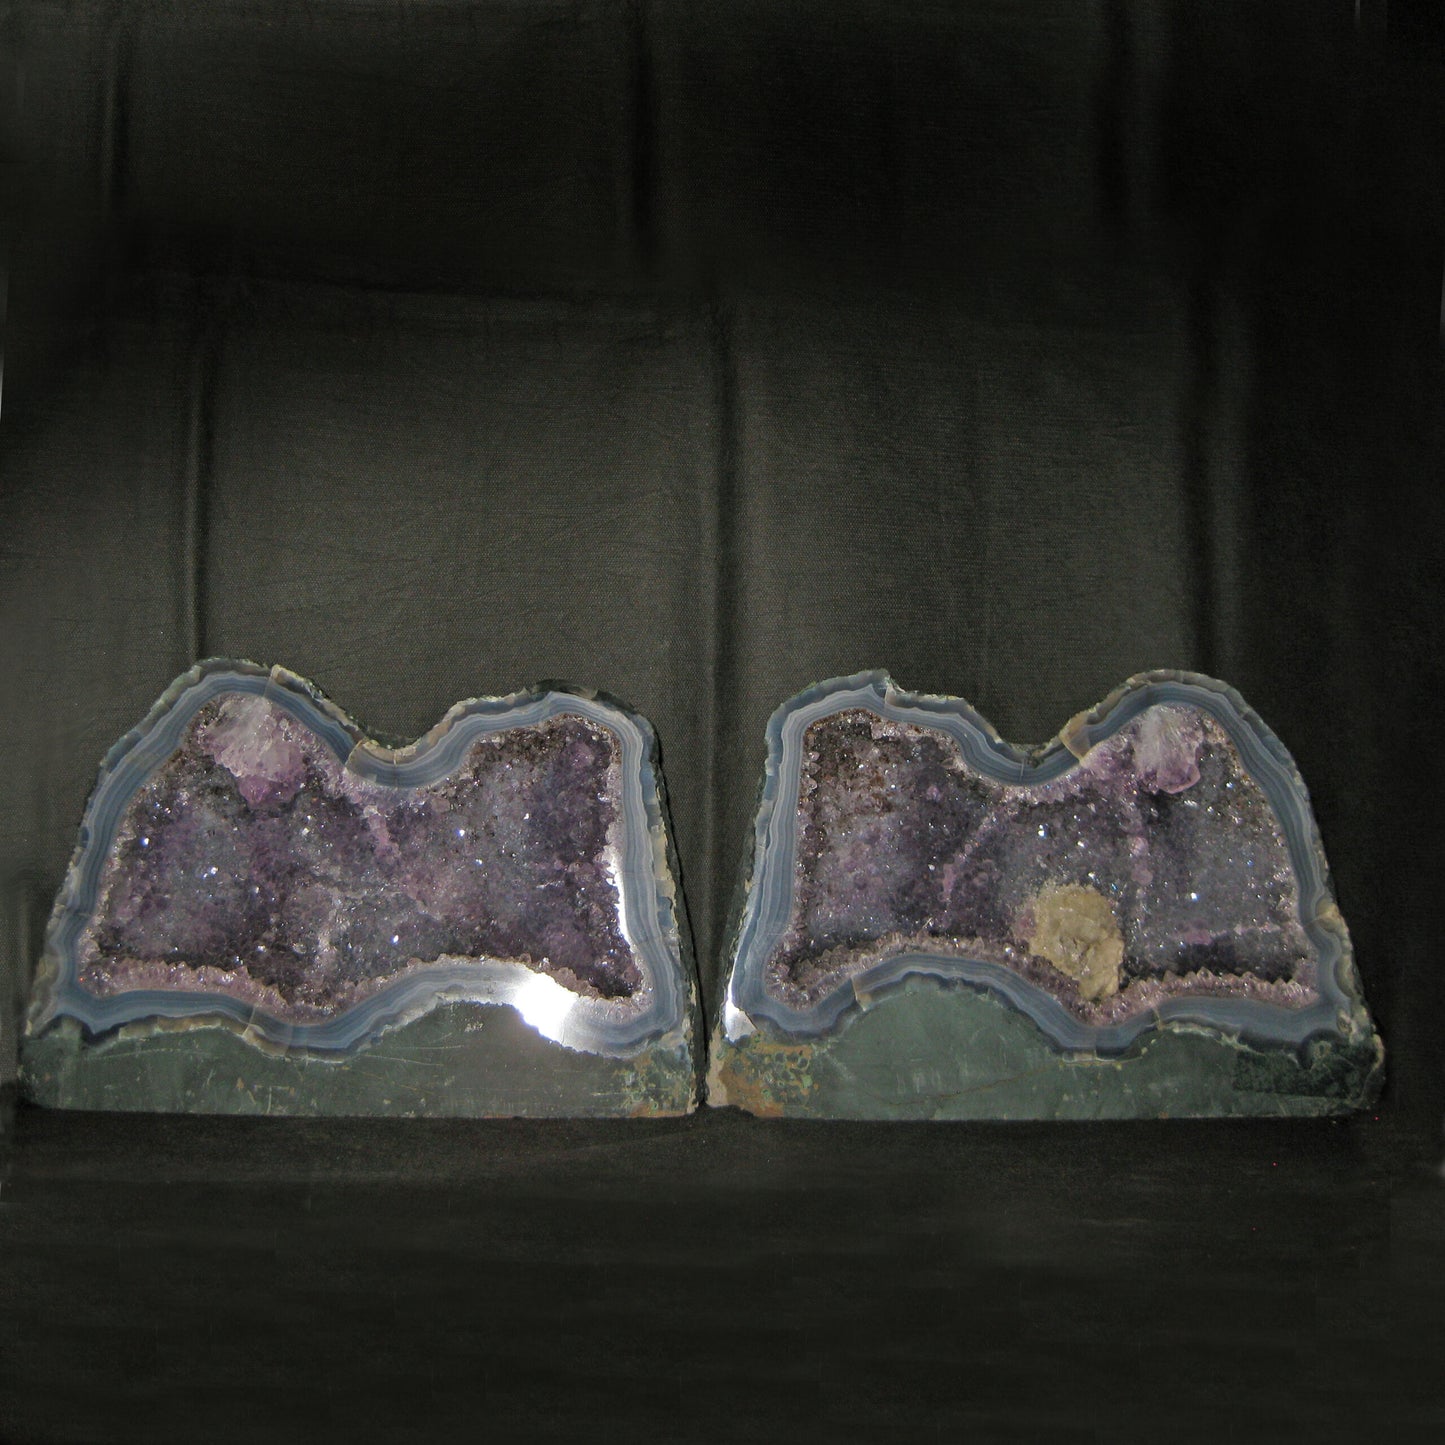 Amethyst split geode